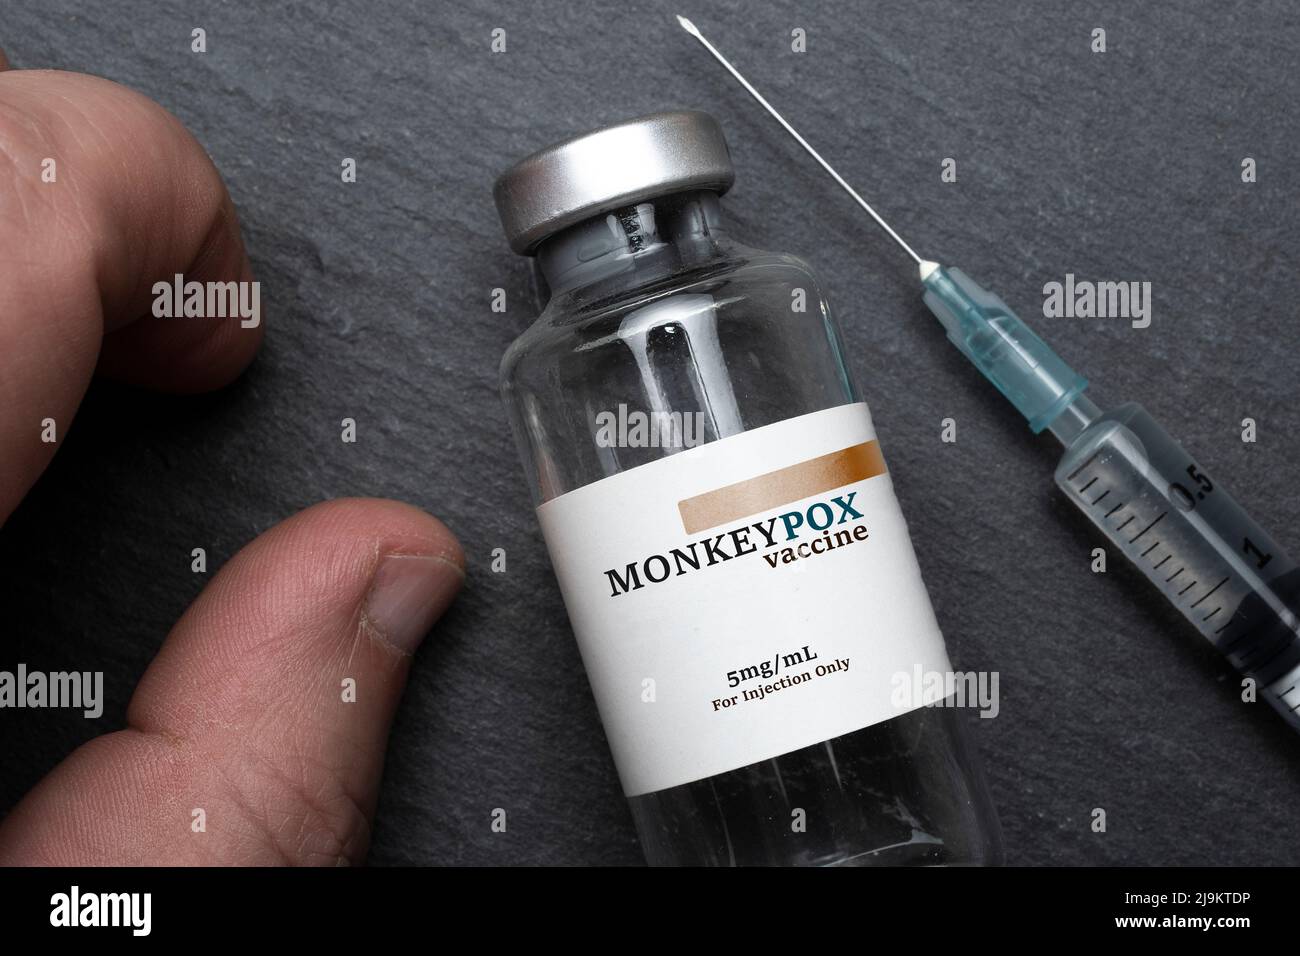 Flaconcino di vaccino scimmipox pronto per essere iniettato Foto Stock